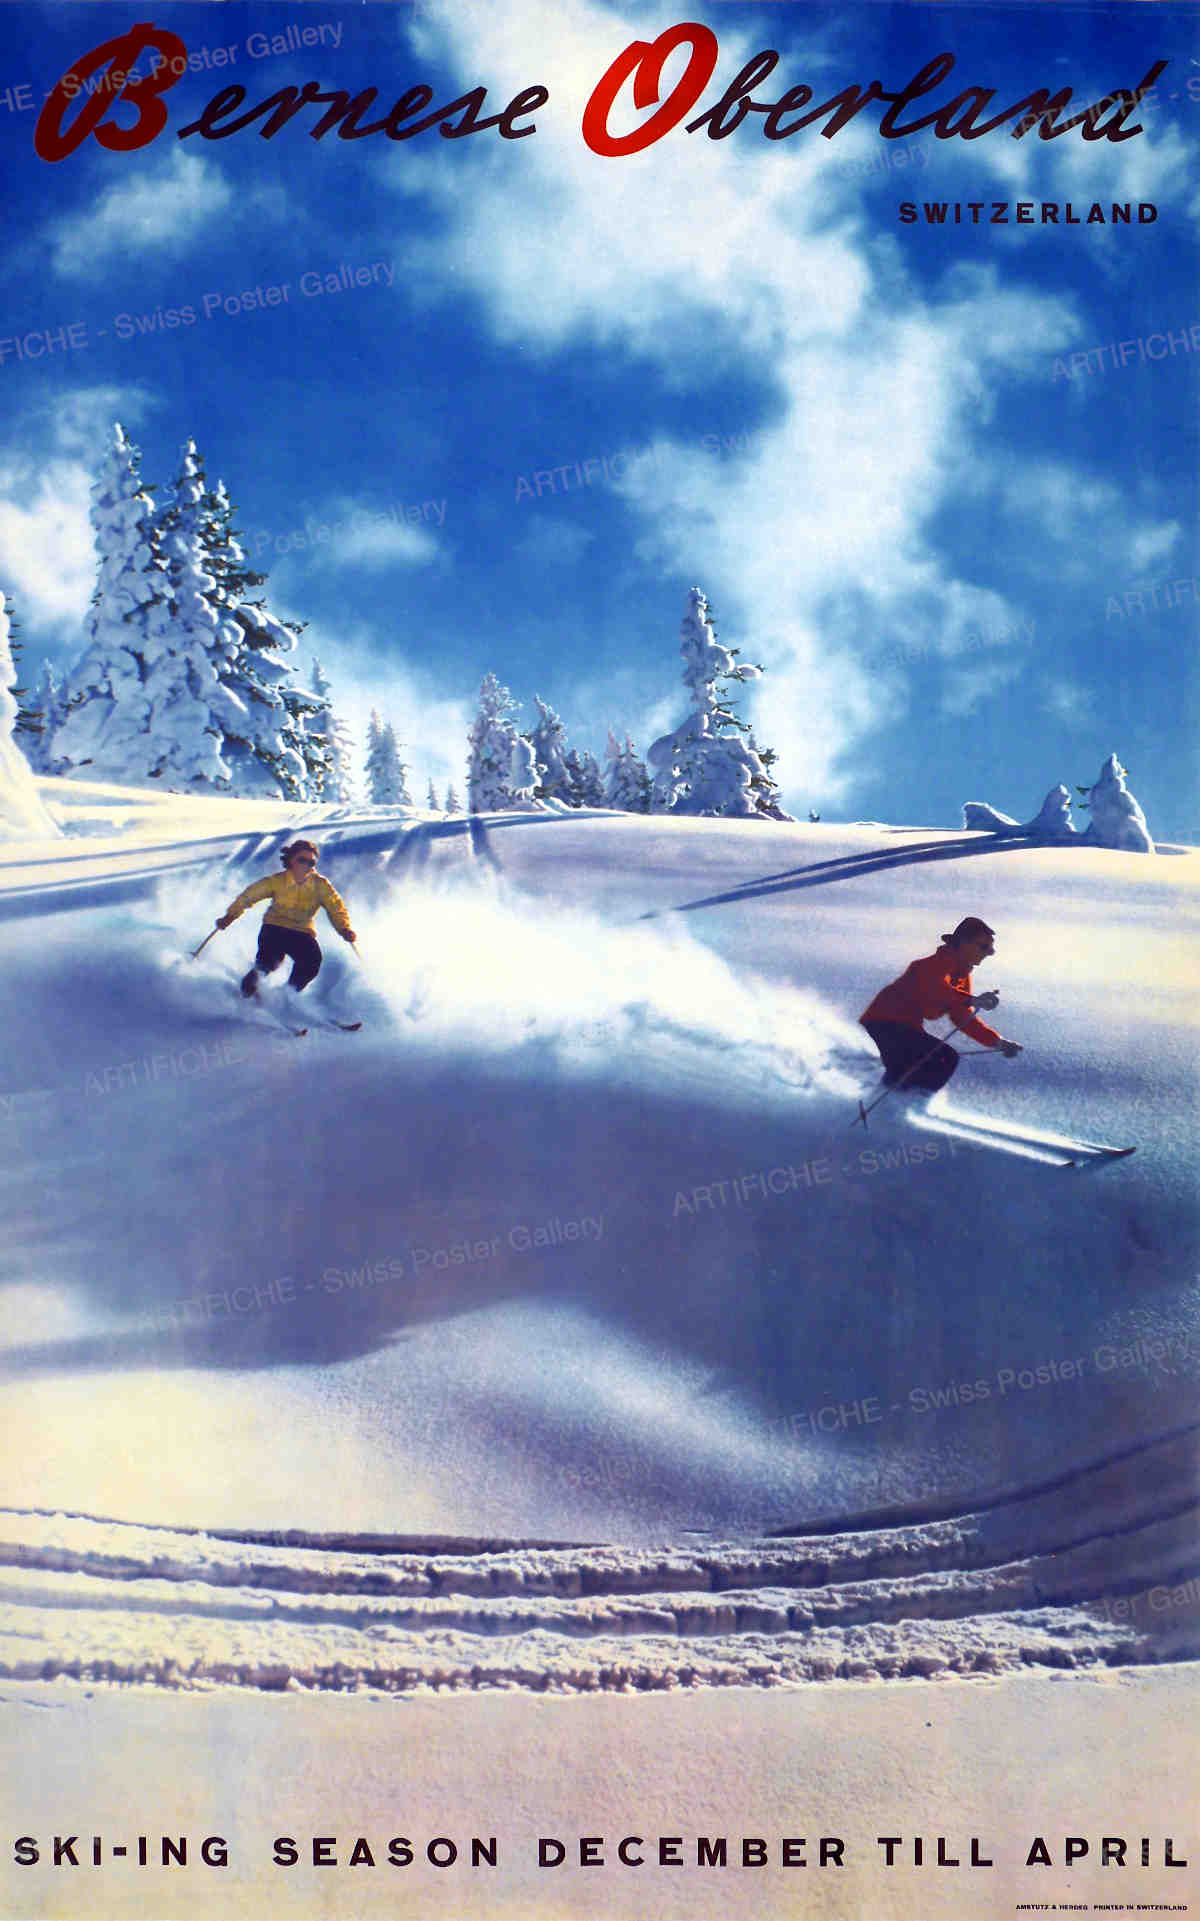 Bernese Oberland – Switzerland – Ski-ing season December till April, 20. Jh. Amstutz & Herdeg